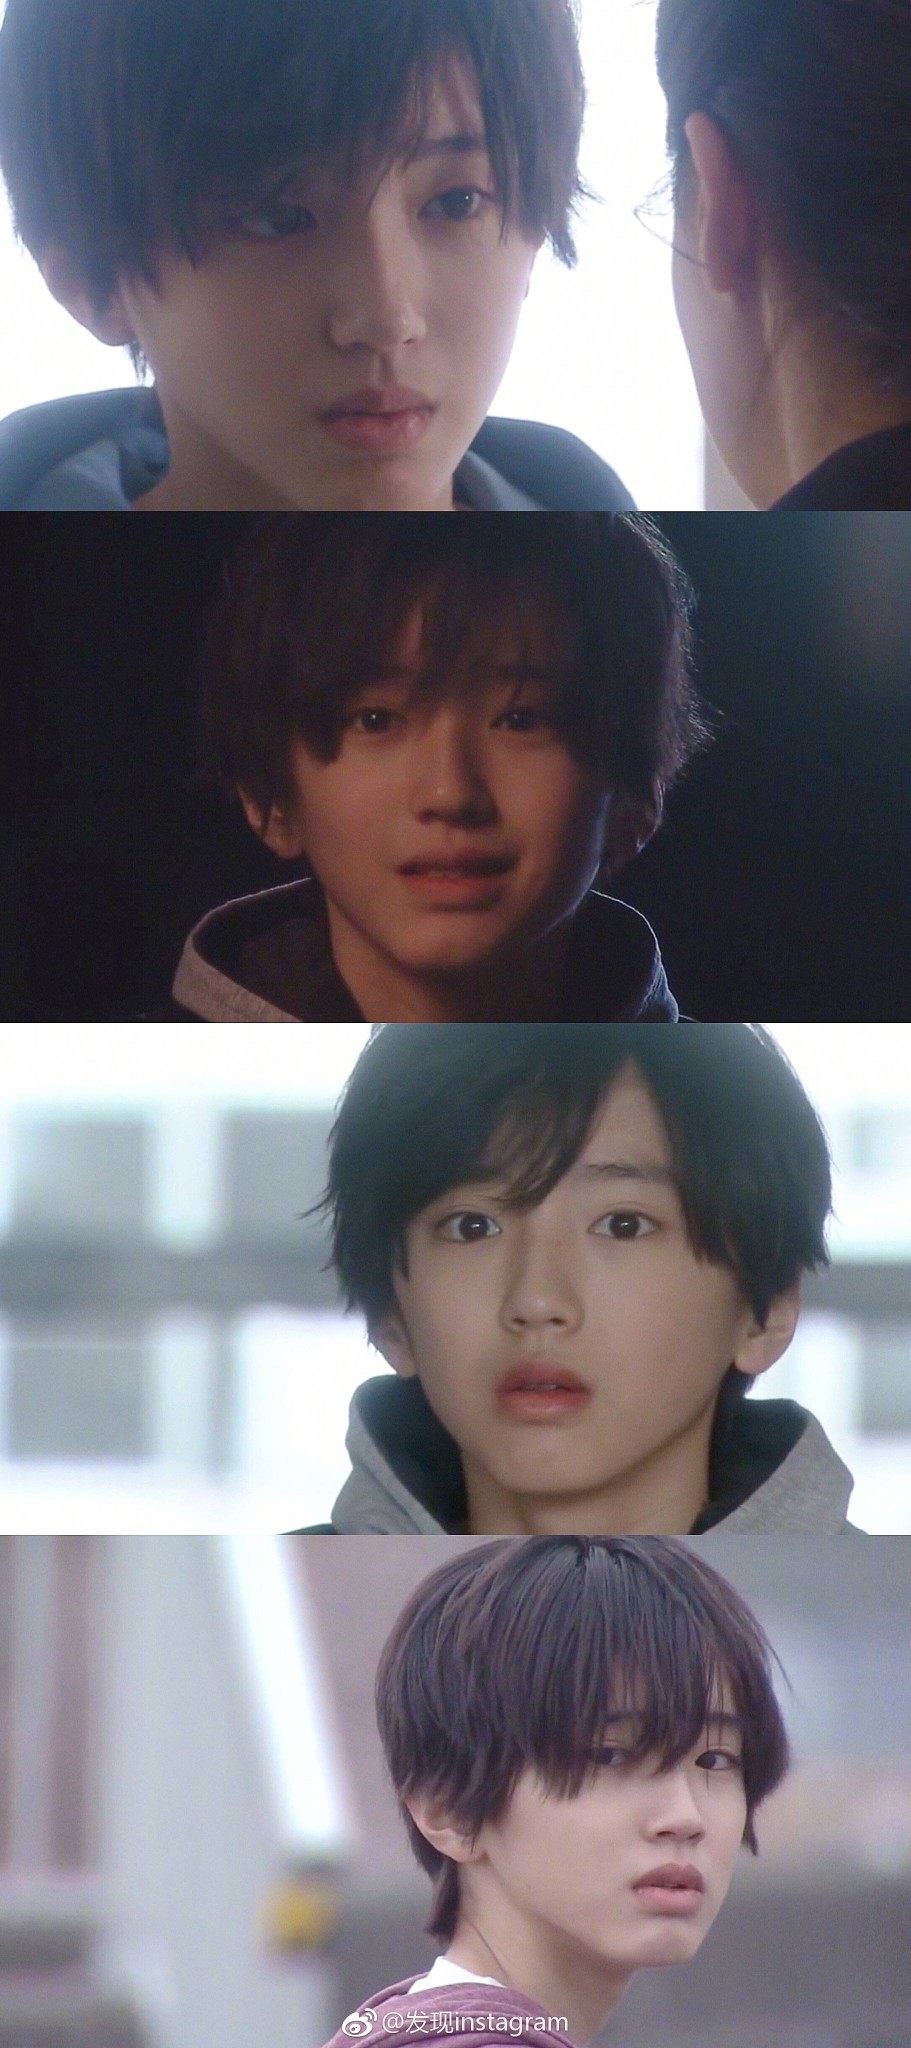 02年日本演员,歌手道枝骏佑,曾出演《成为母亲》,《绝对零度》等.